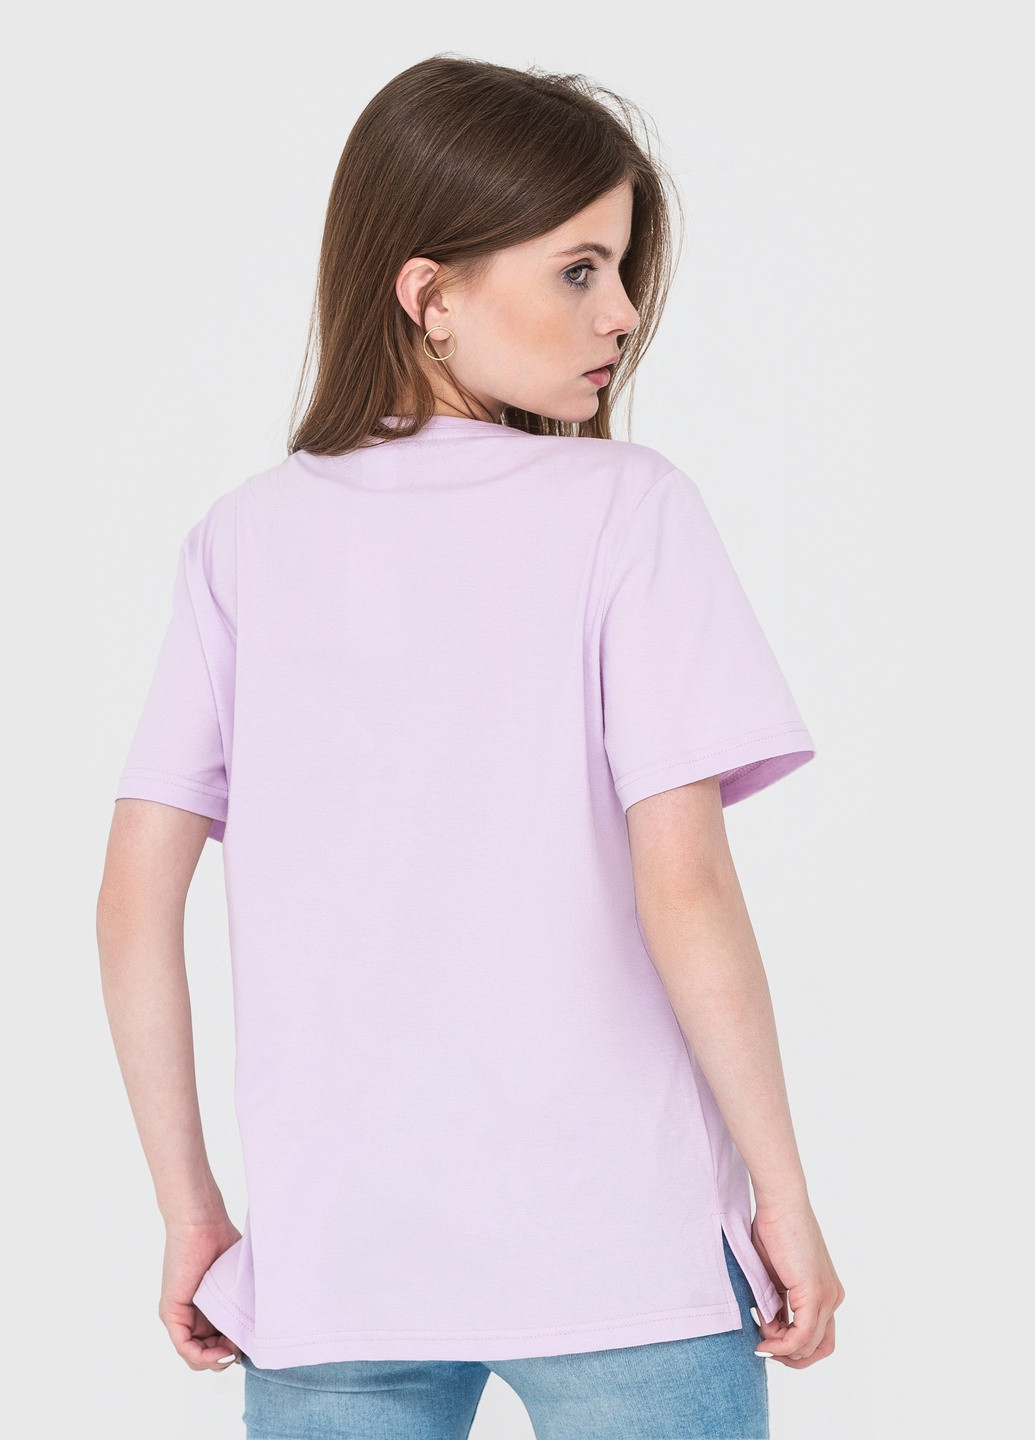 Светло-фиолетовая летняя футболка женская с коротким рукавом Роза